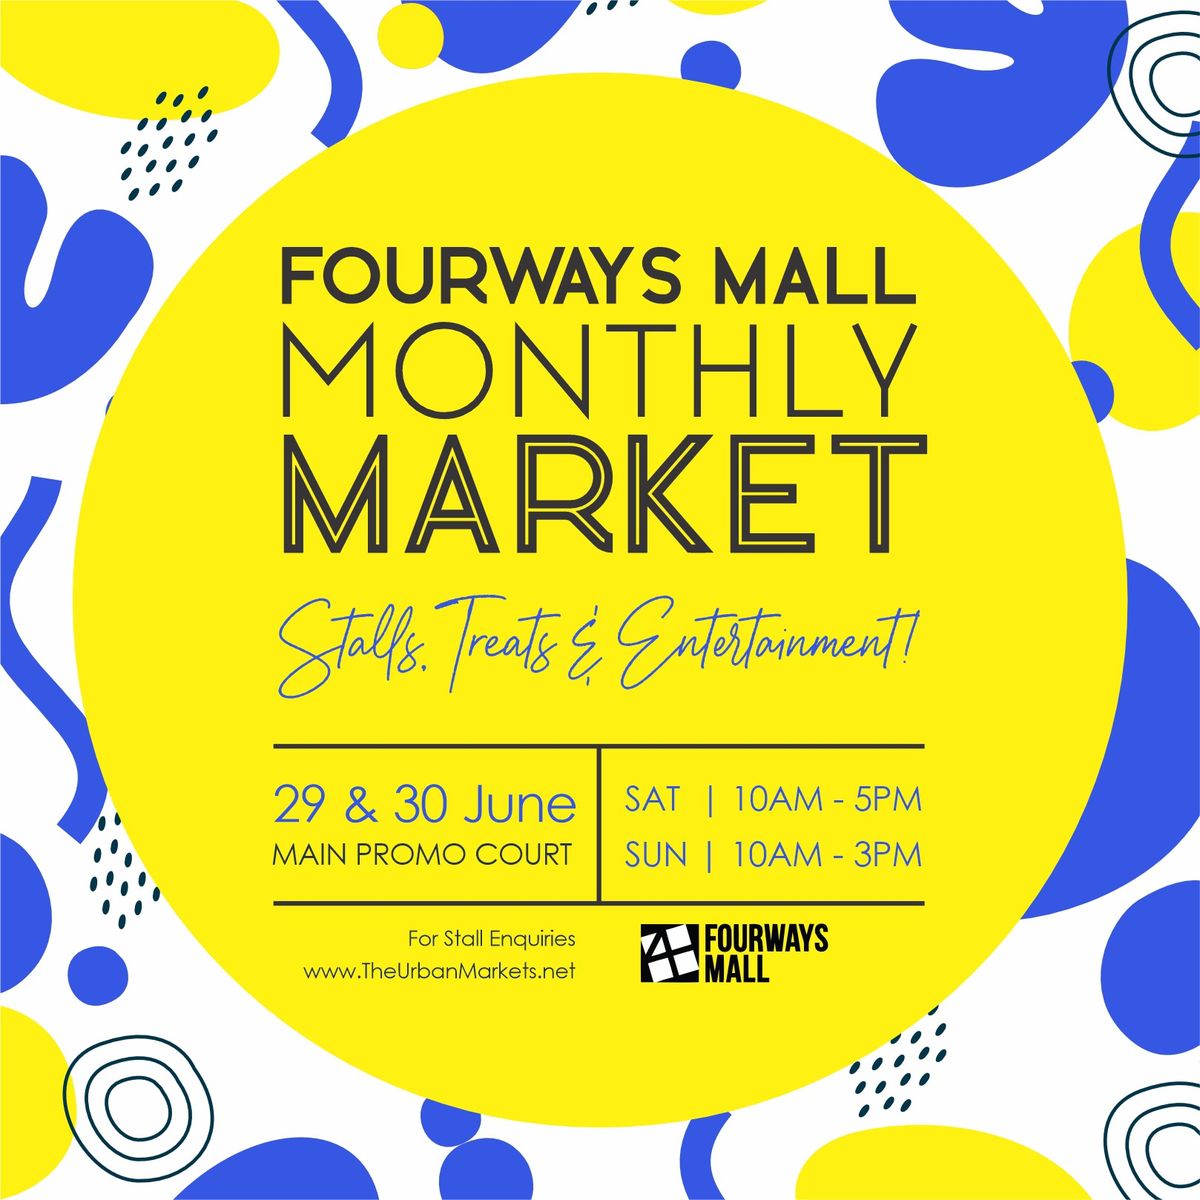 The Fourways Mall Market